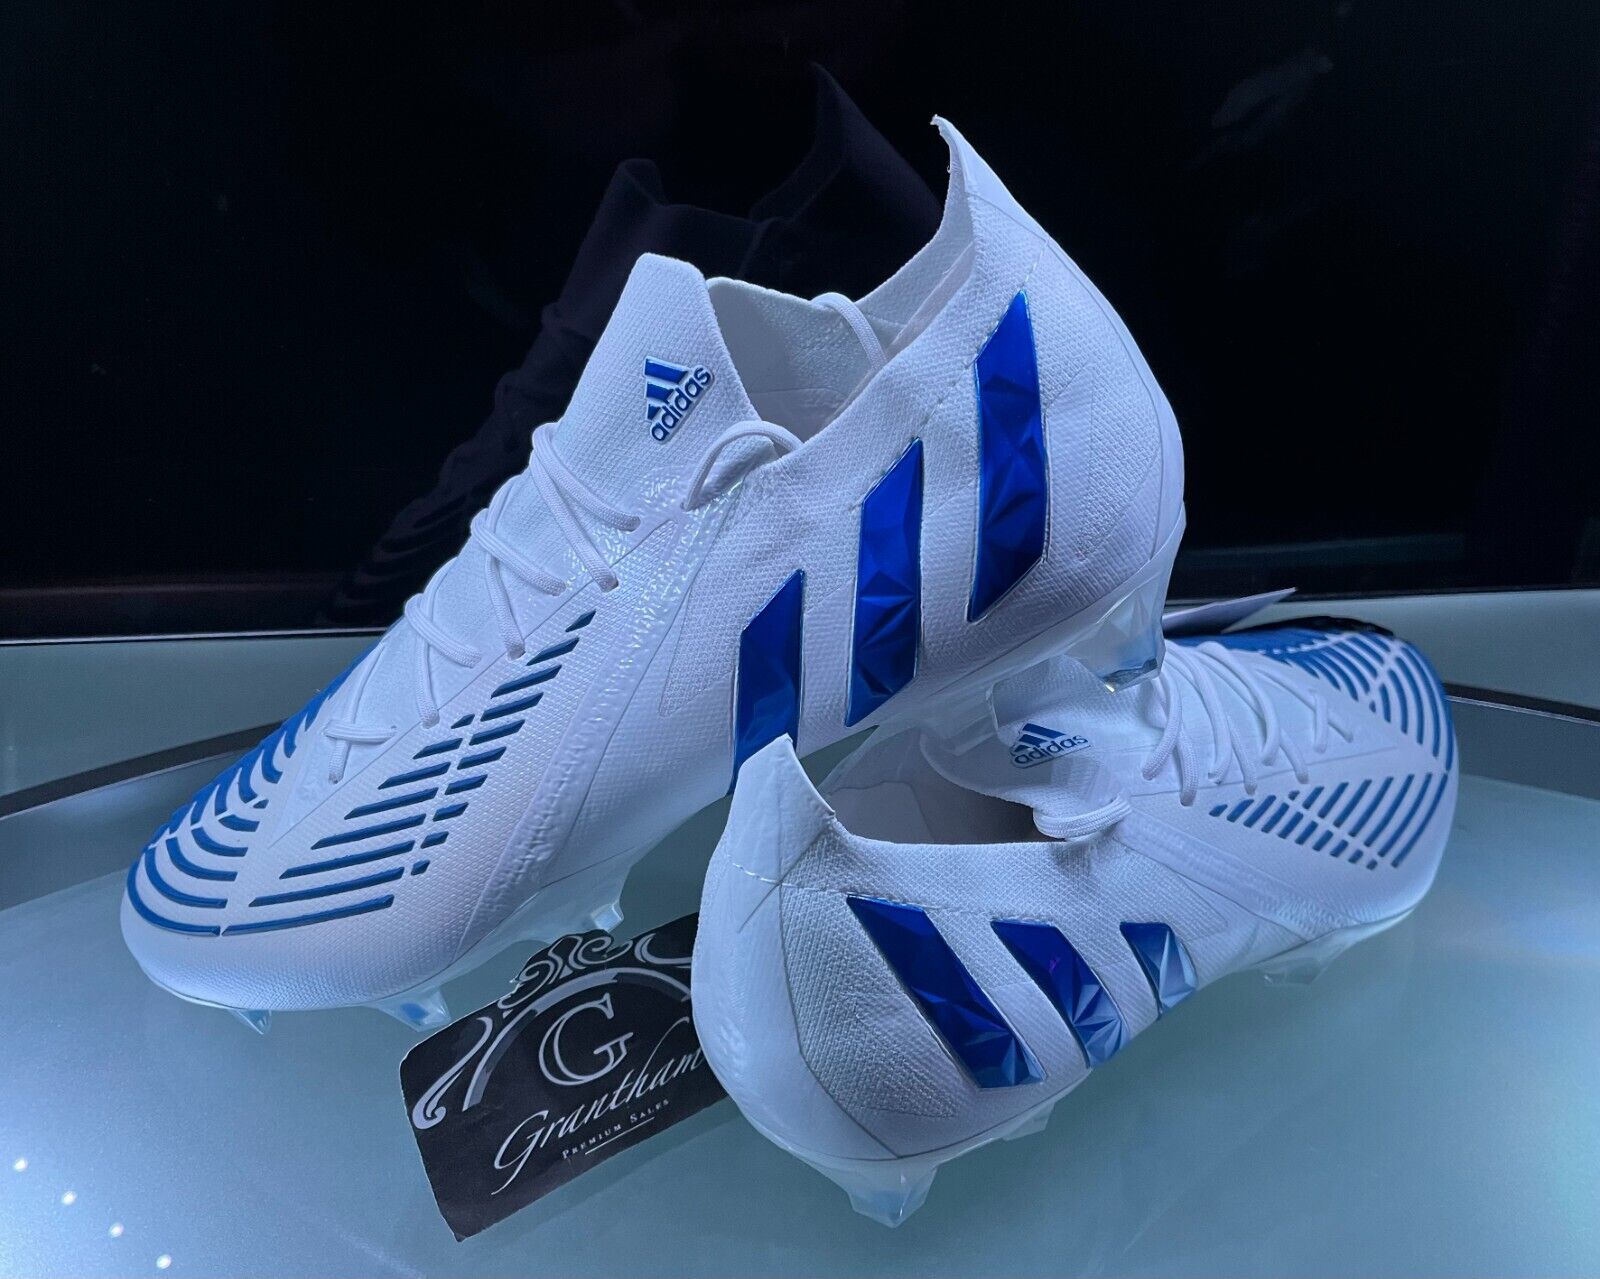 Botas de fútbol Adidas Predator FG bajas - Reino Unido 10.5 / UE - Precio de venta sugerido por el fabricante £180 | eBay